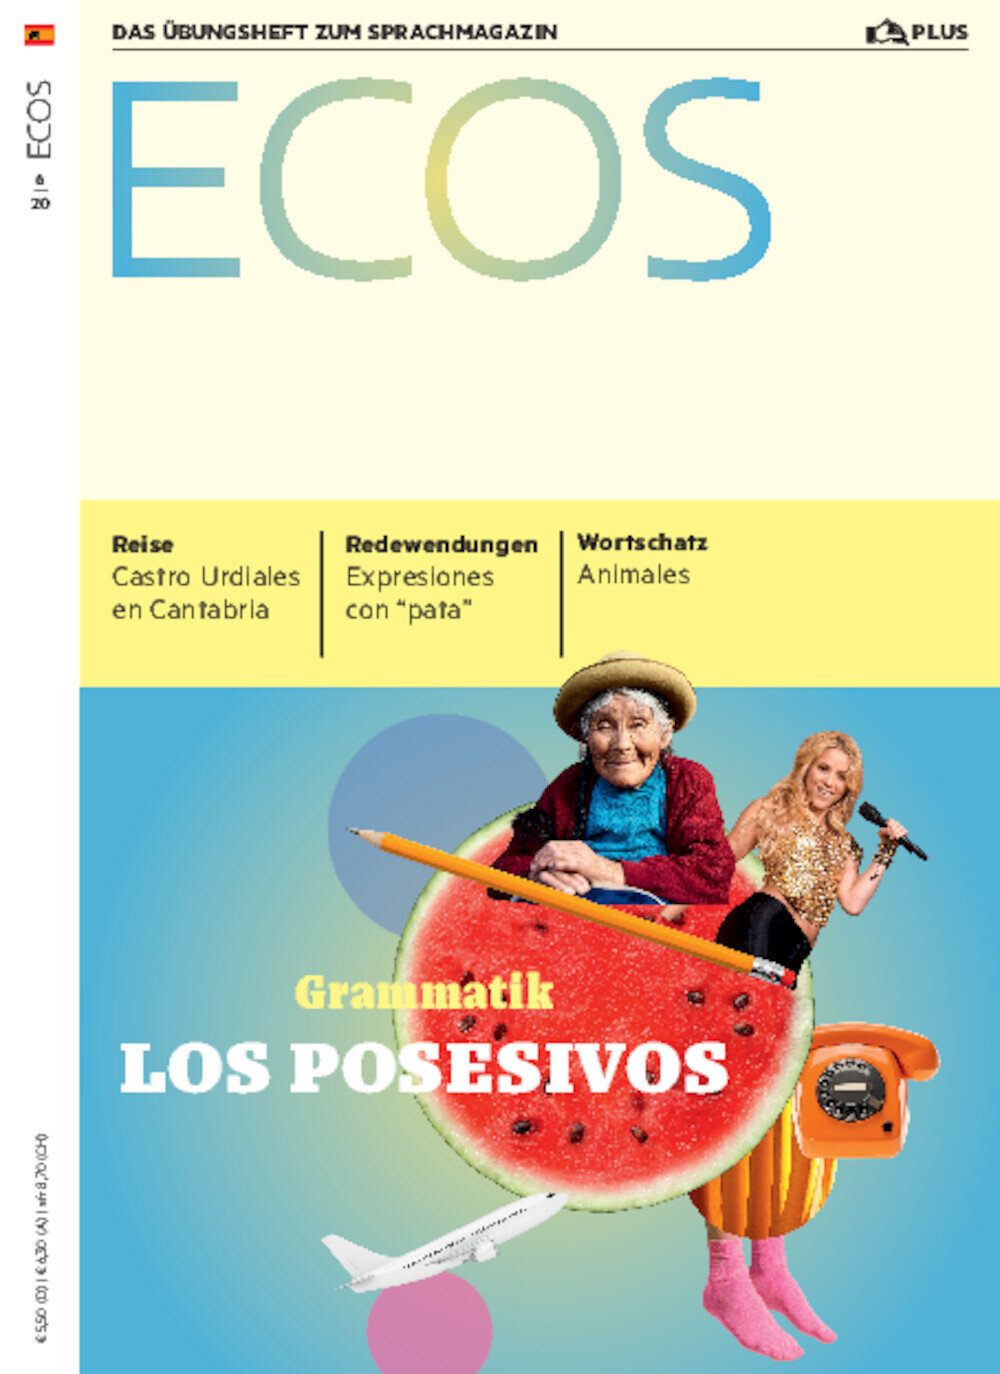 Ecos PLUS ePaper 06/2020